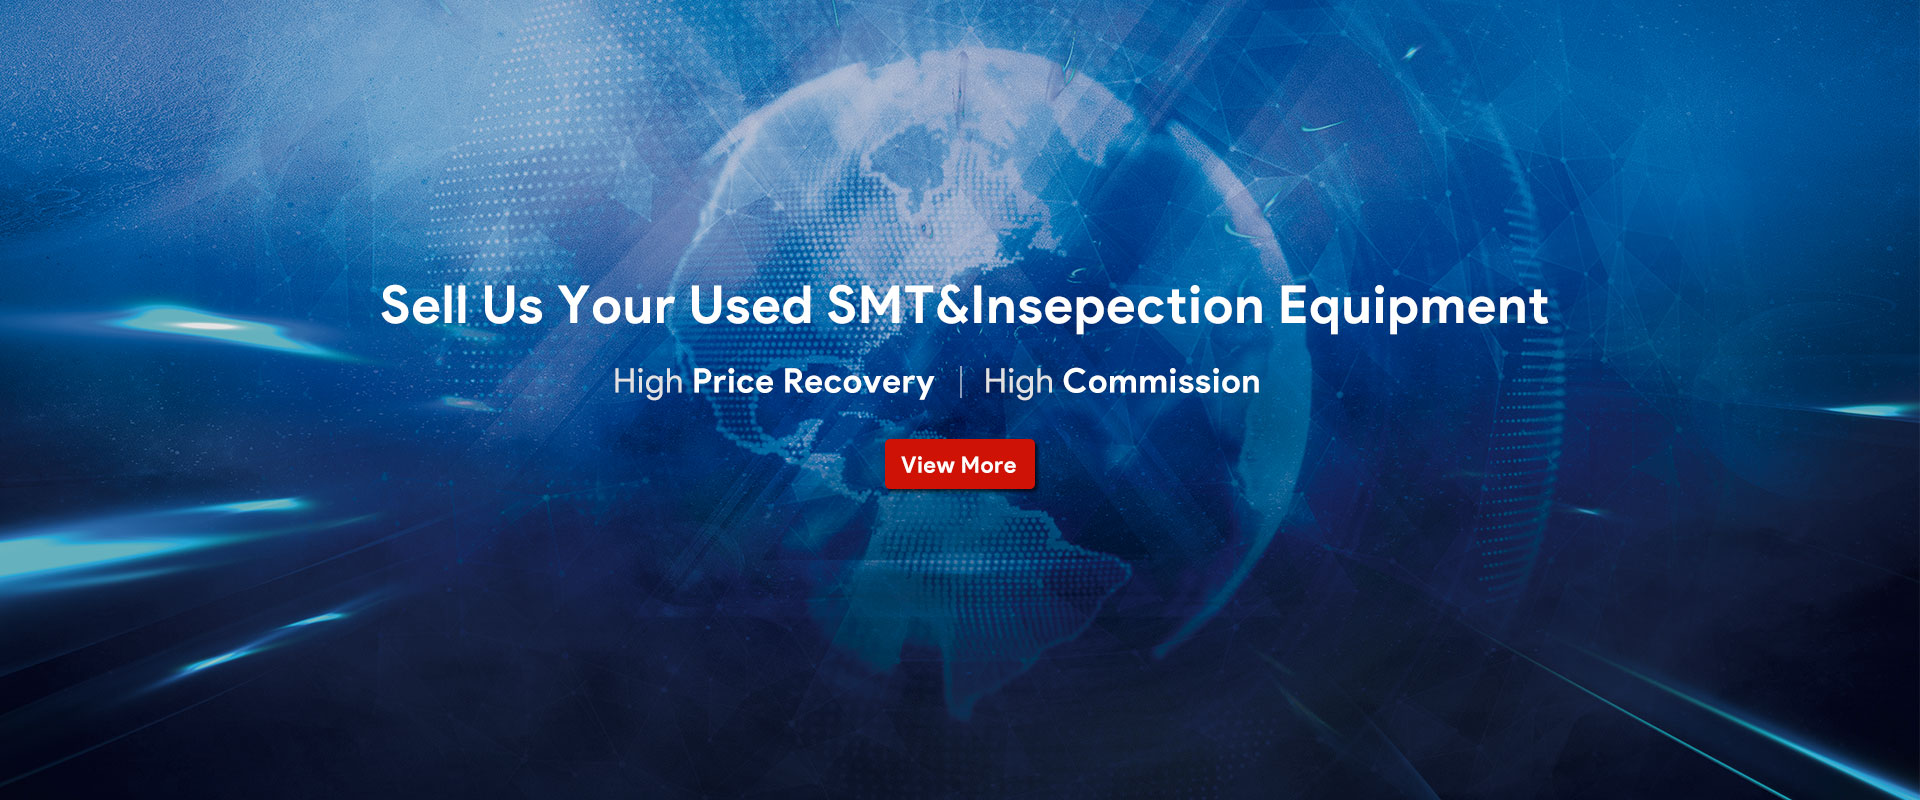 Vendez-nous votre équipement SMT&Insepection usagé